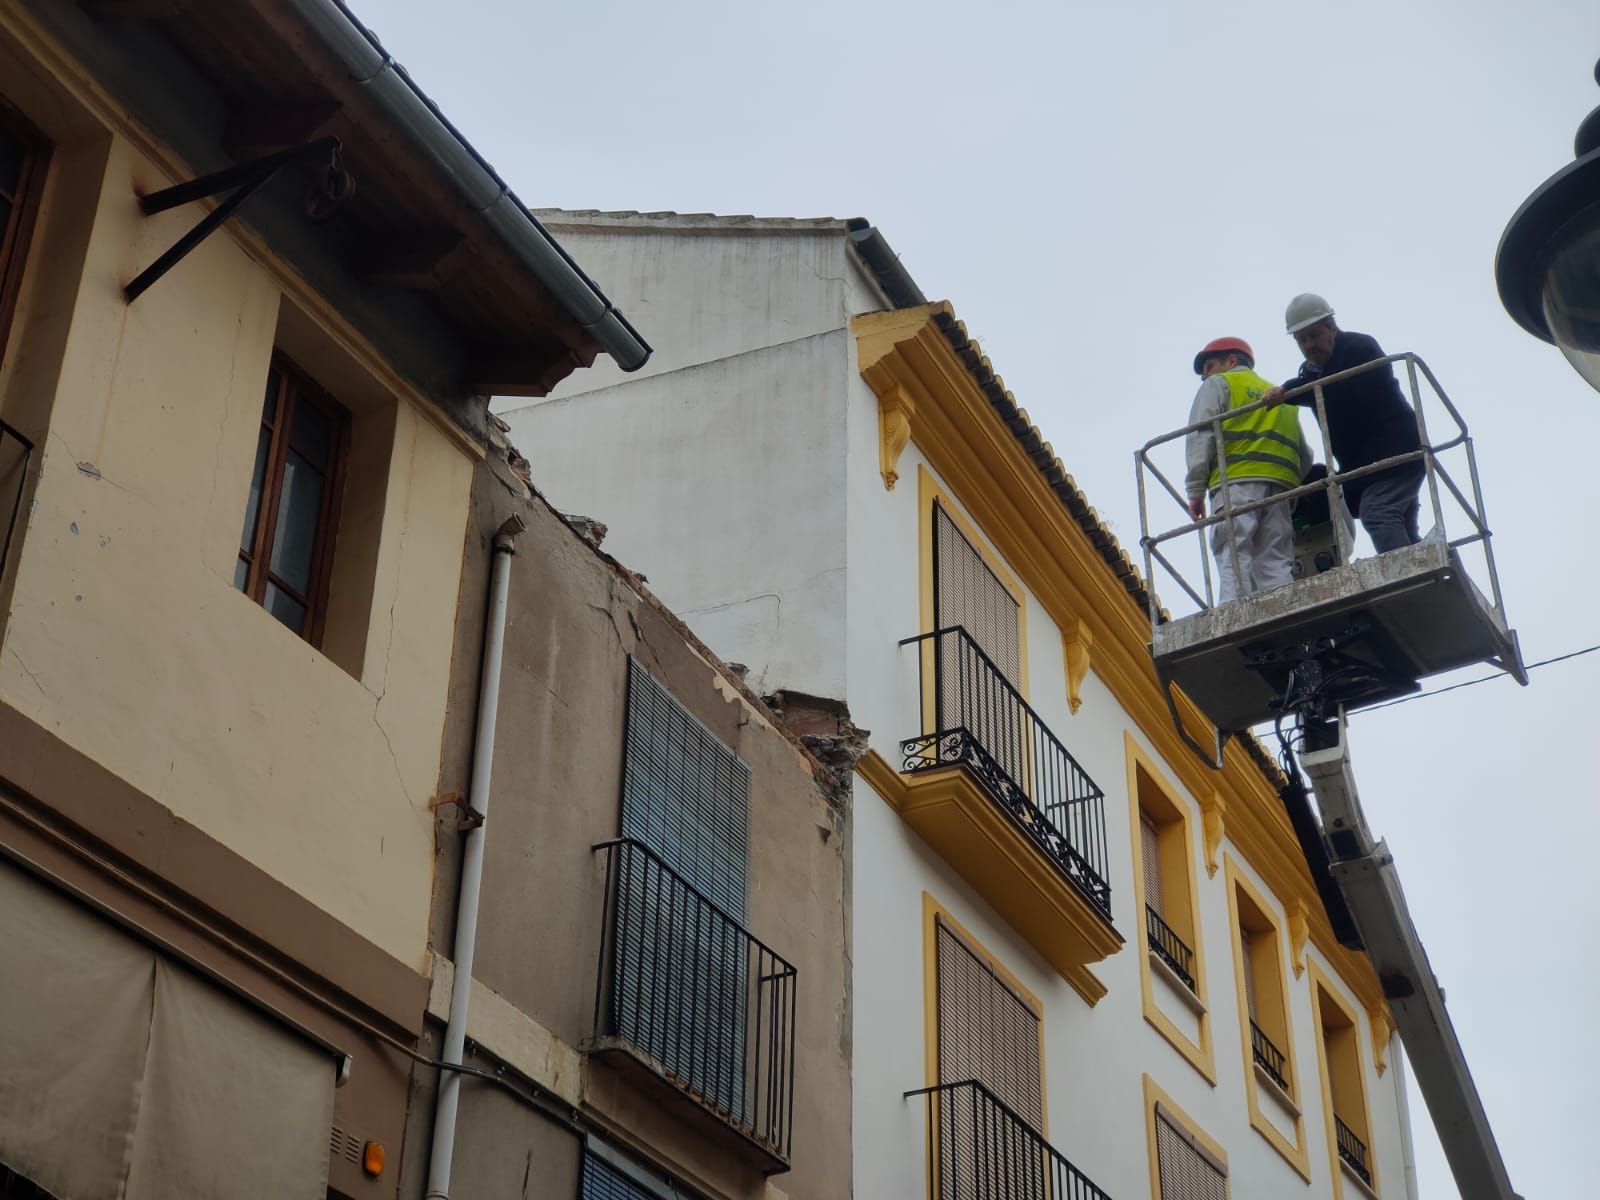 Revisan el estado del tejado de una casa abandonada en el casco antiguo de Xàtiva